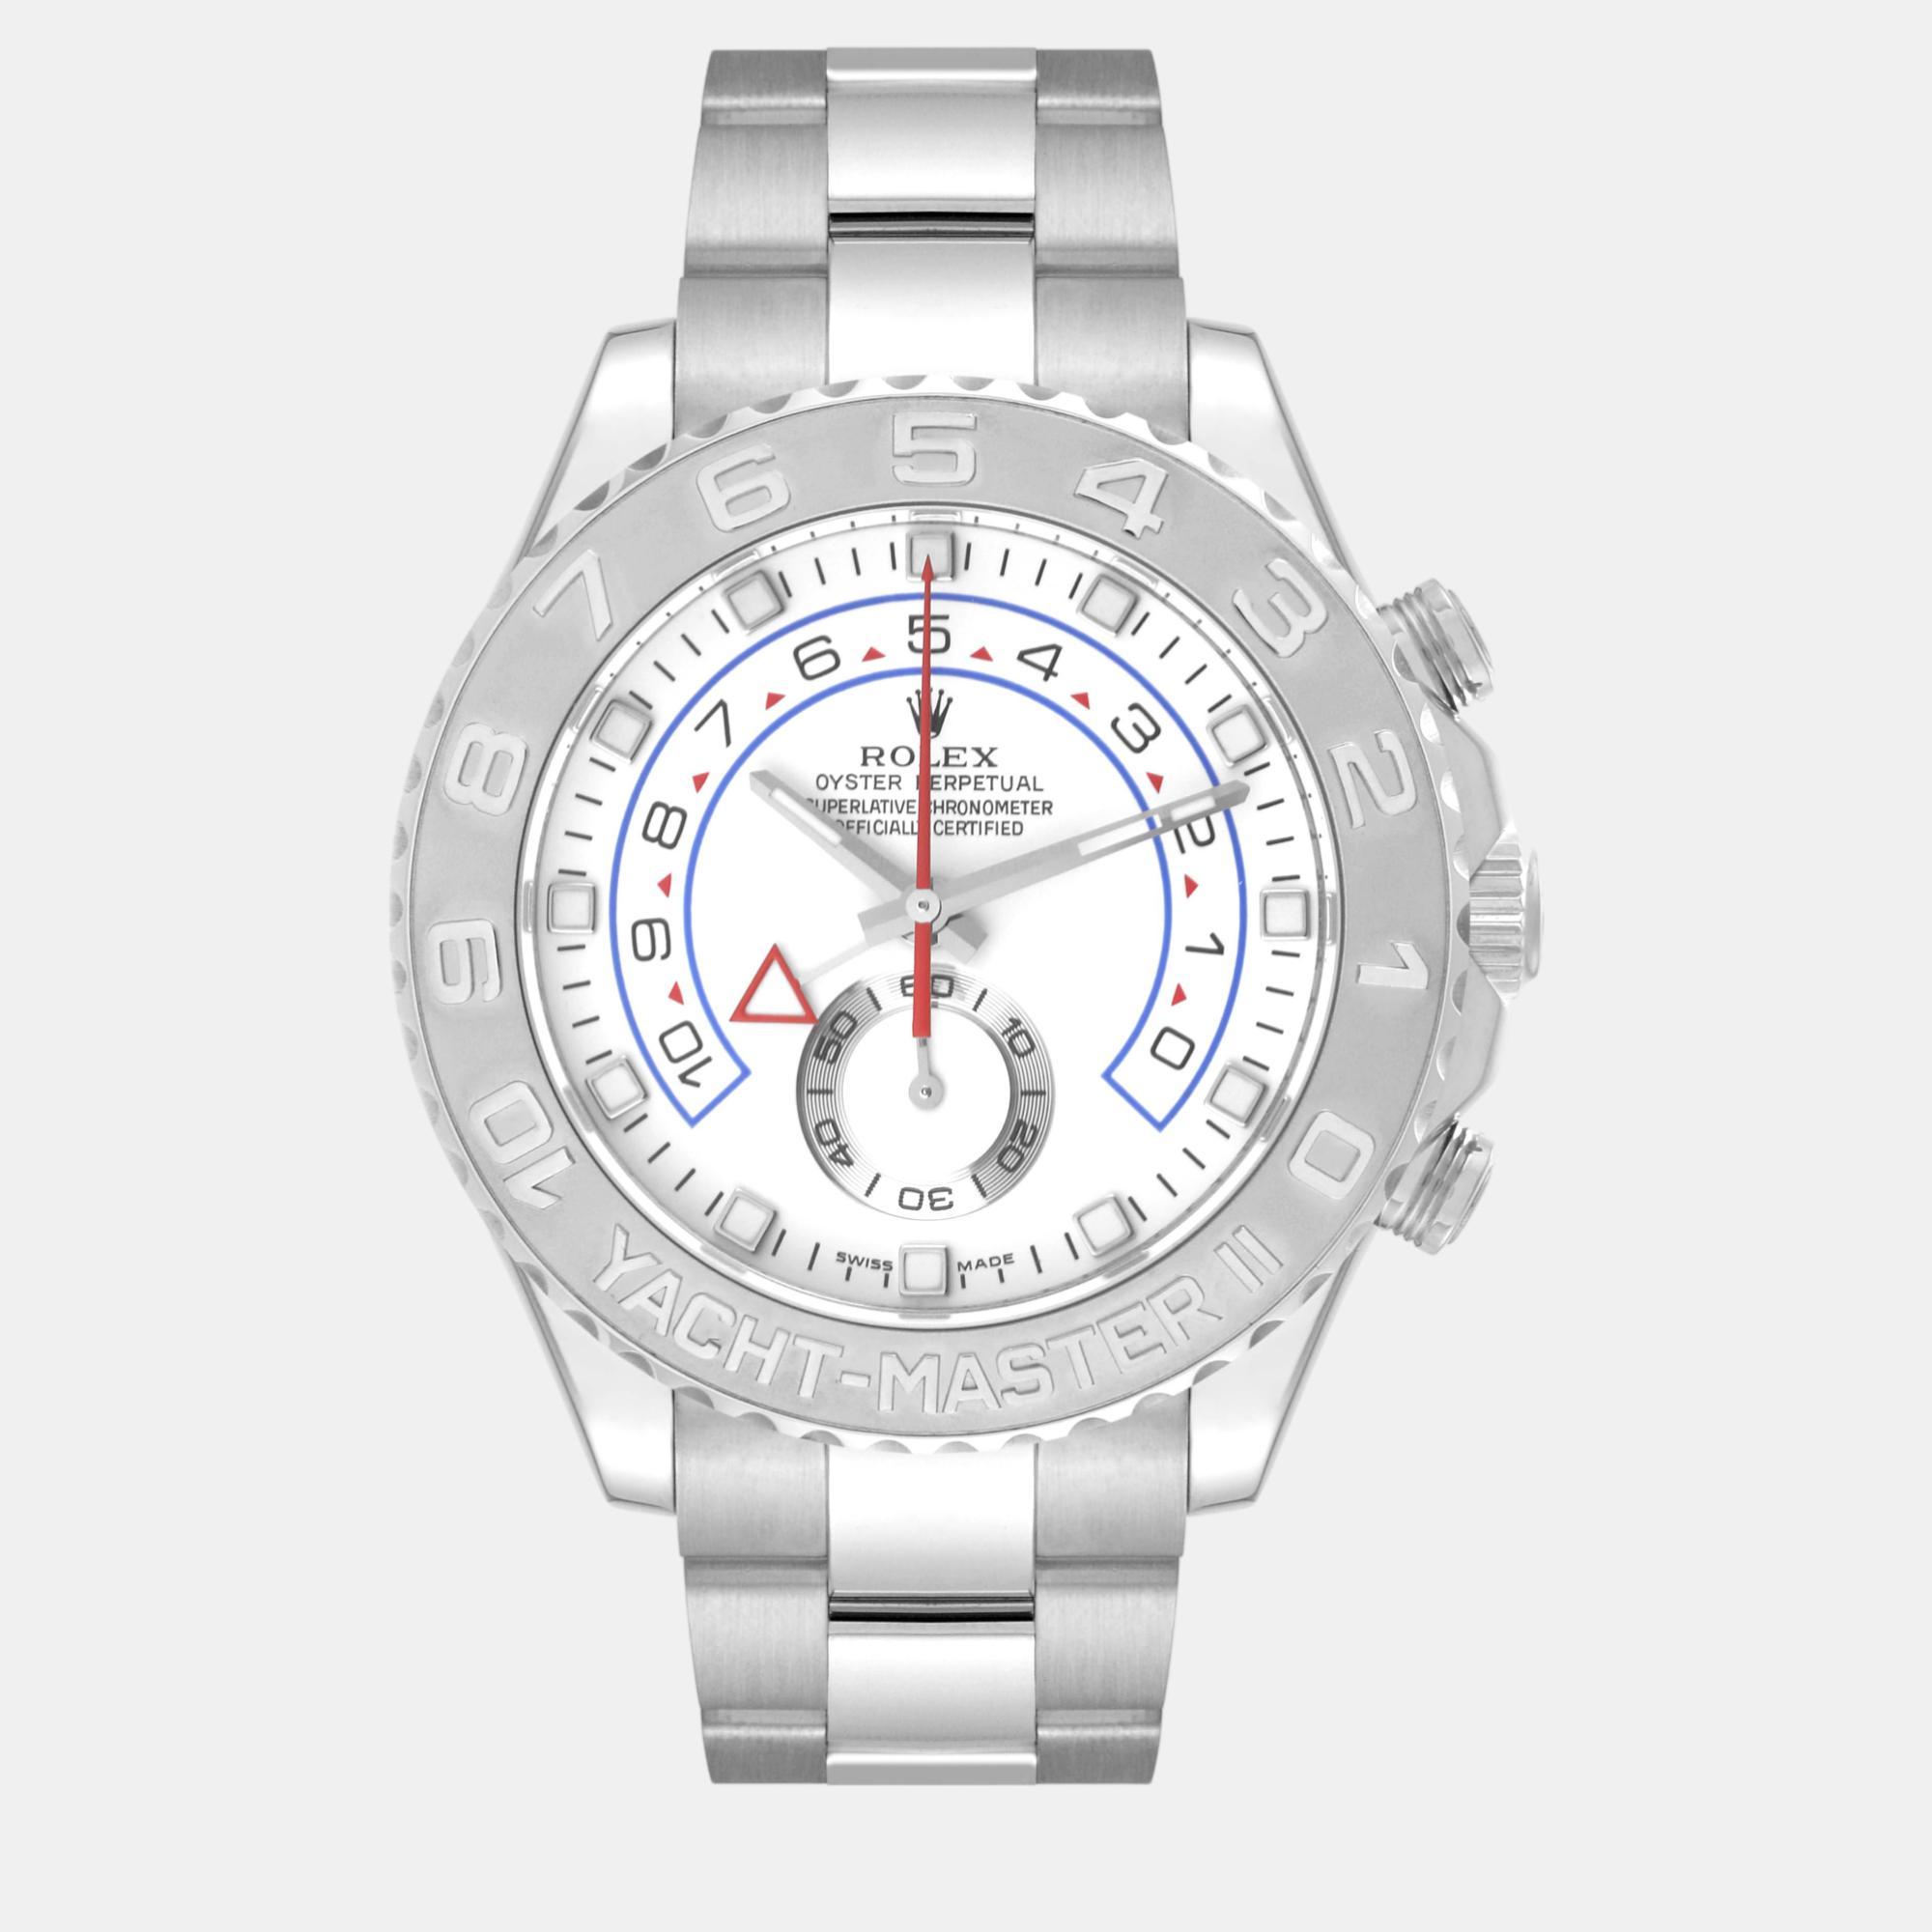 Rolex yachtmaster ii regatta white gold platinum men's watch 116689 44 mm